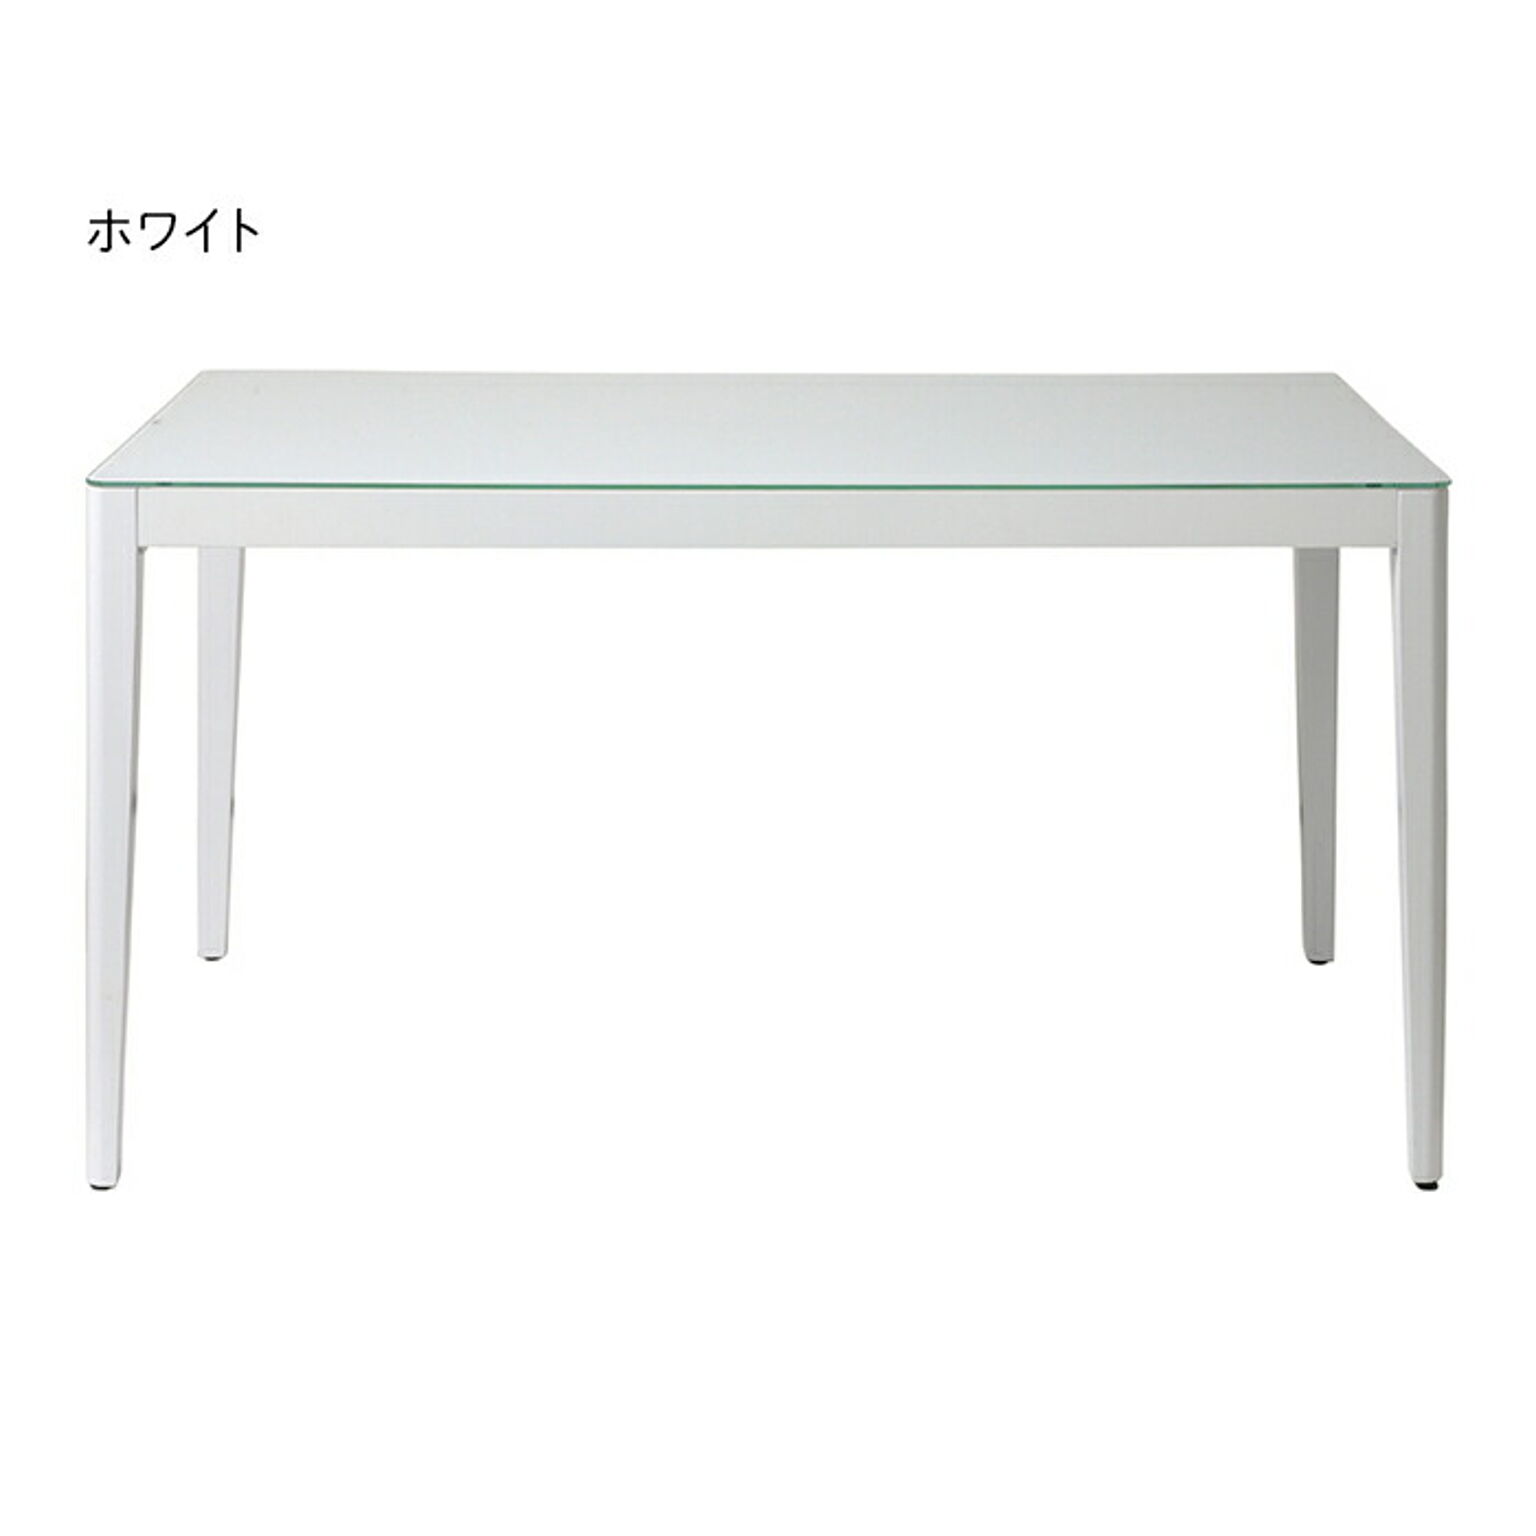 テーブル 組立式 ウィズ ダイニングテーブル 135 幅1350x奥行800x高さ720mm あずま工芸